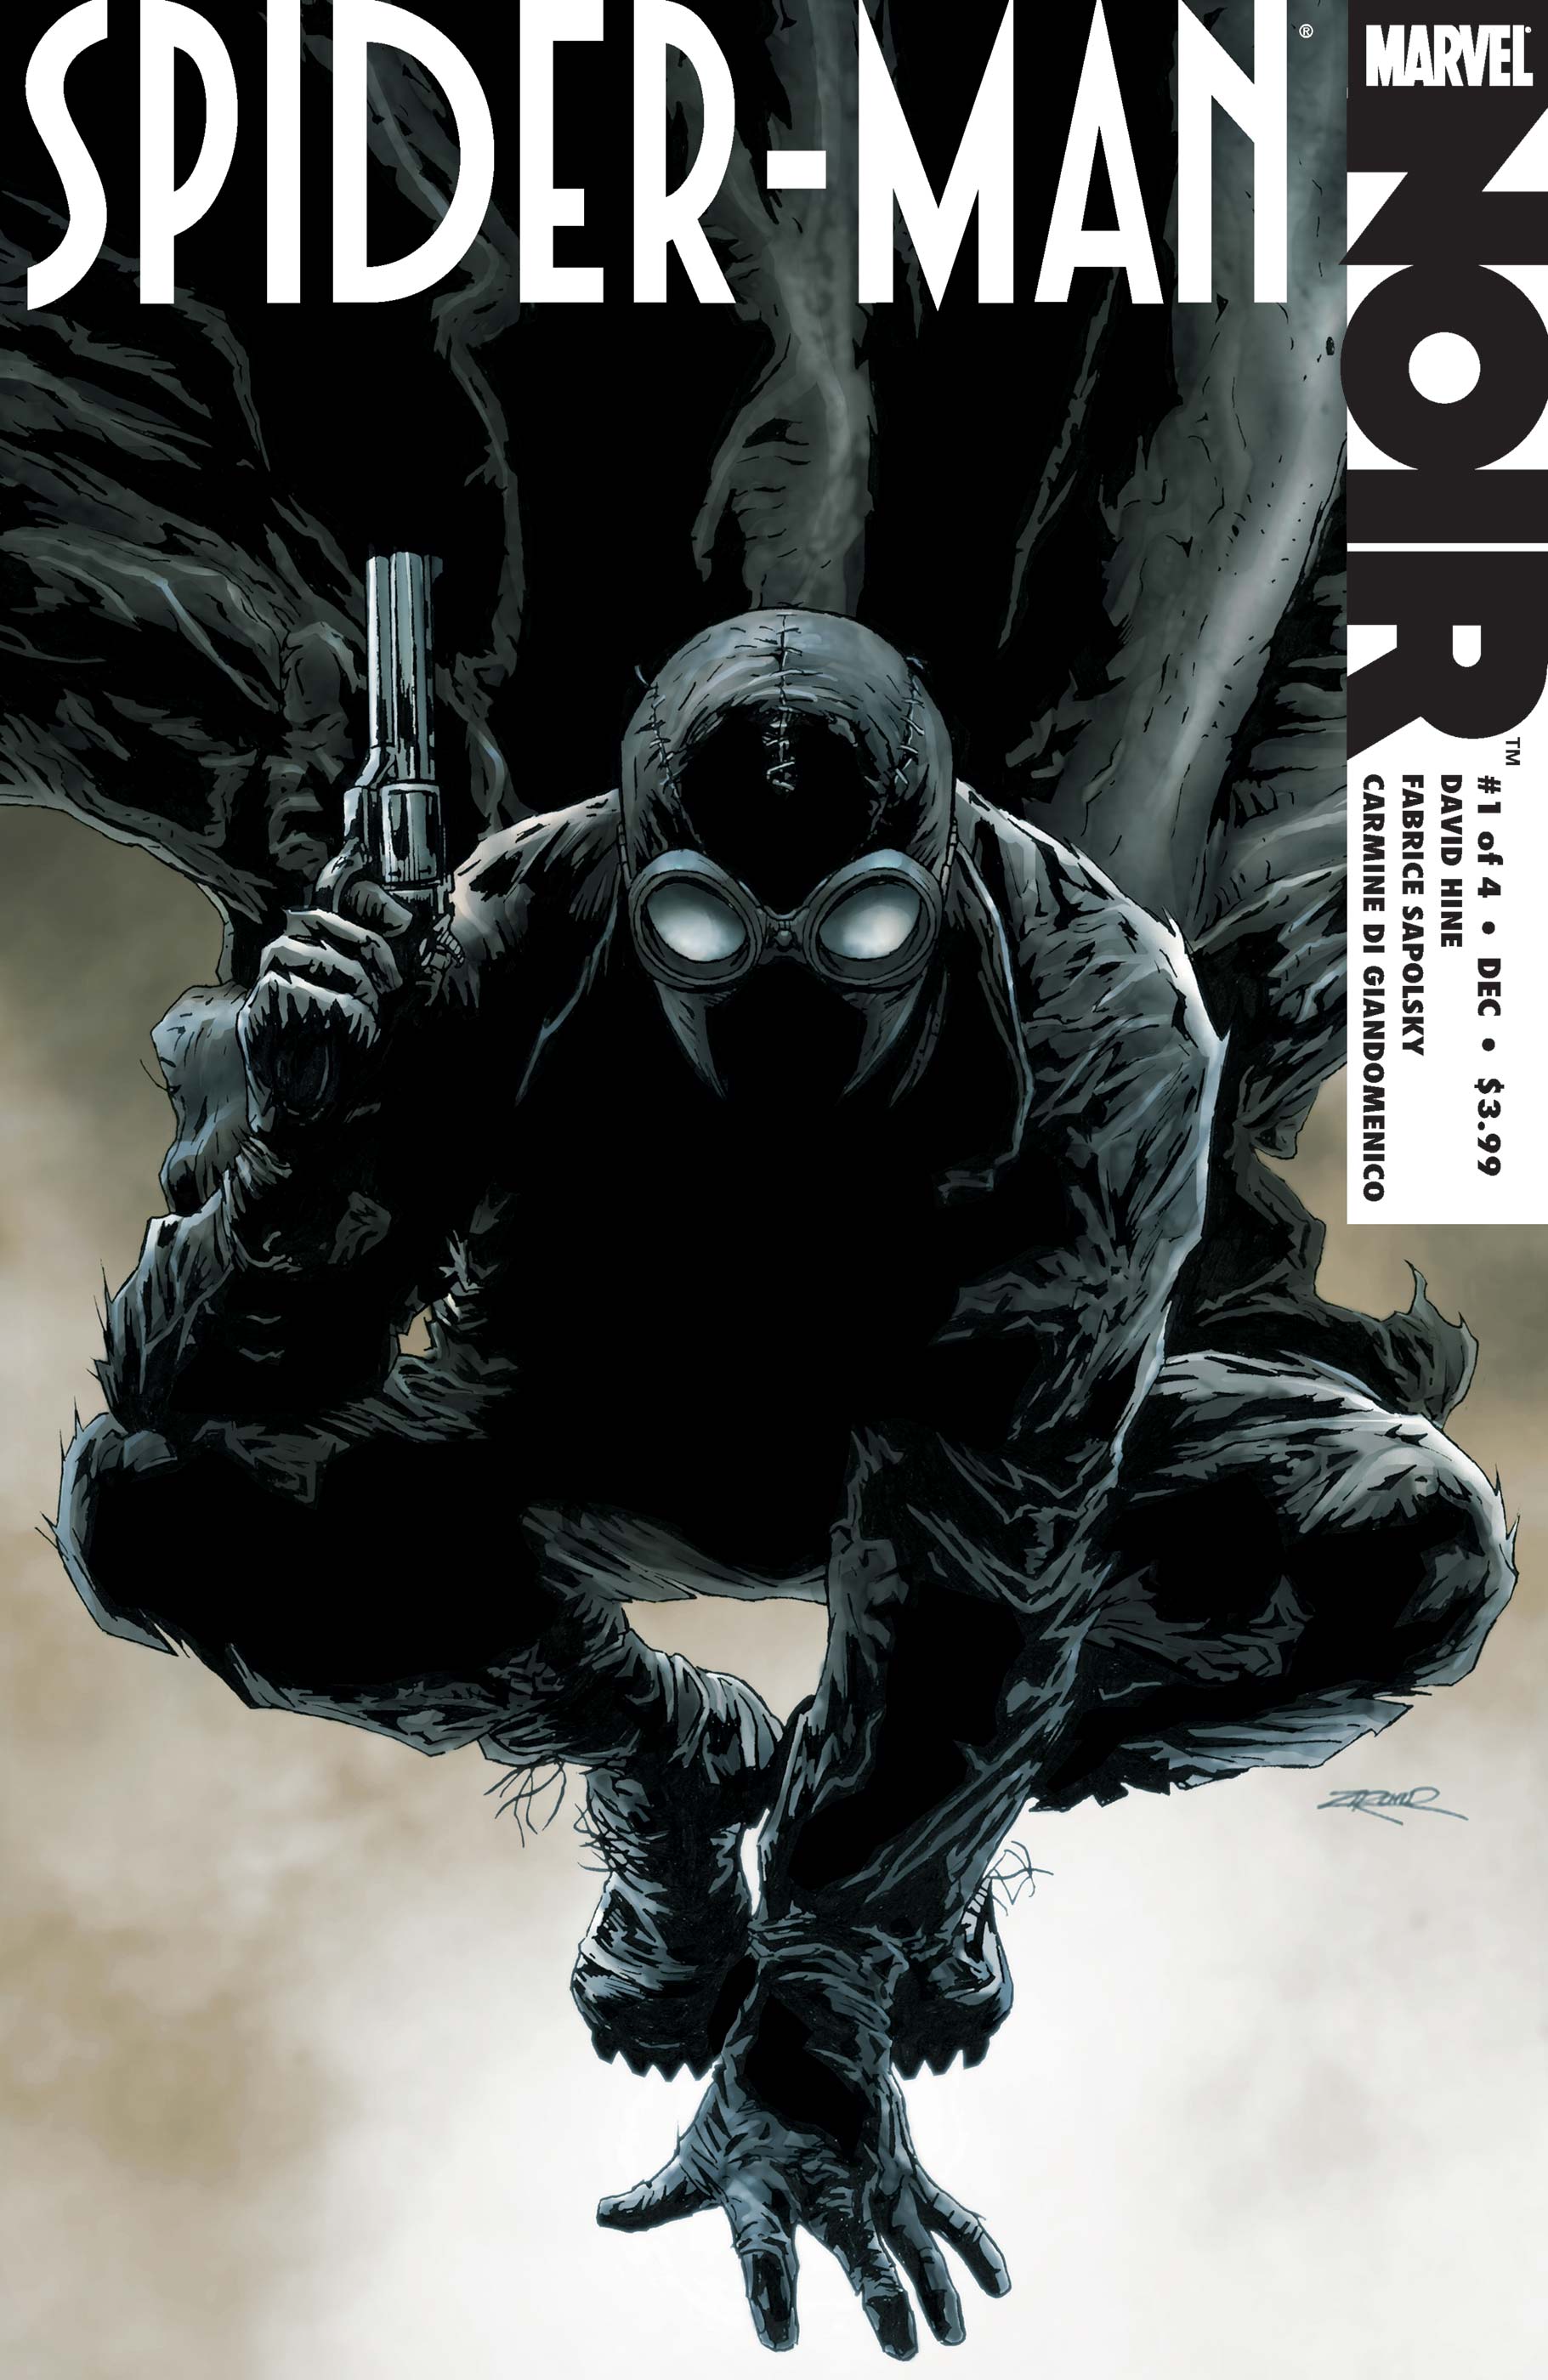 Spider man noir issue 1